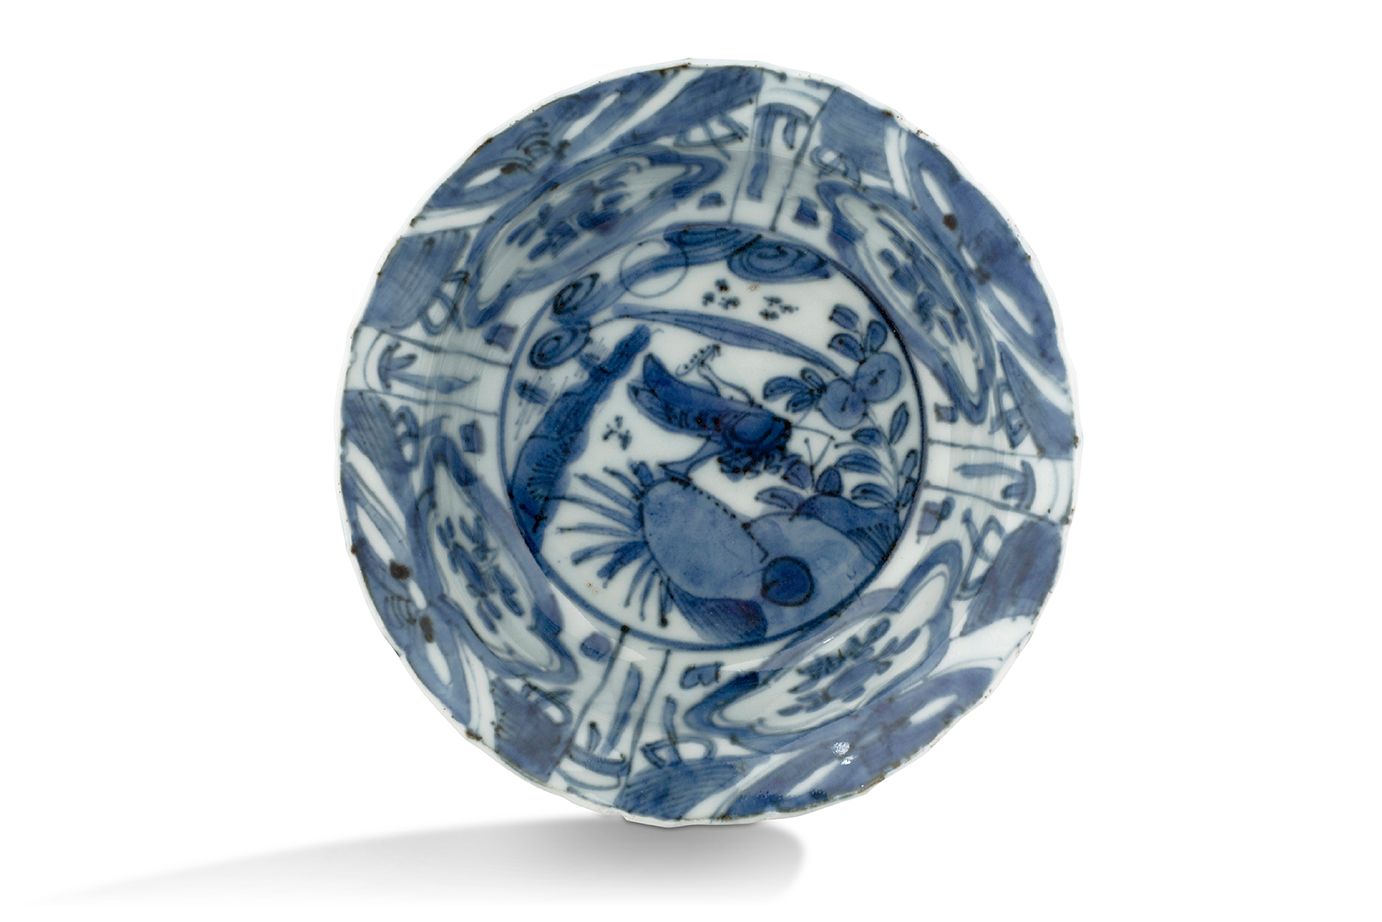 CHINE DYNASTIE MING, ÉPOQUE WANLI (1575-1620) Bol Klapmut
En porcelaine bleu-bla&hellip;